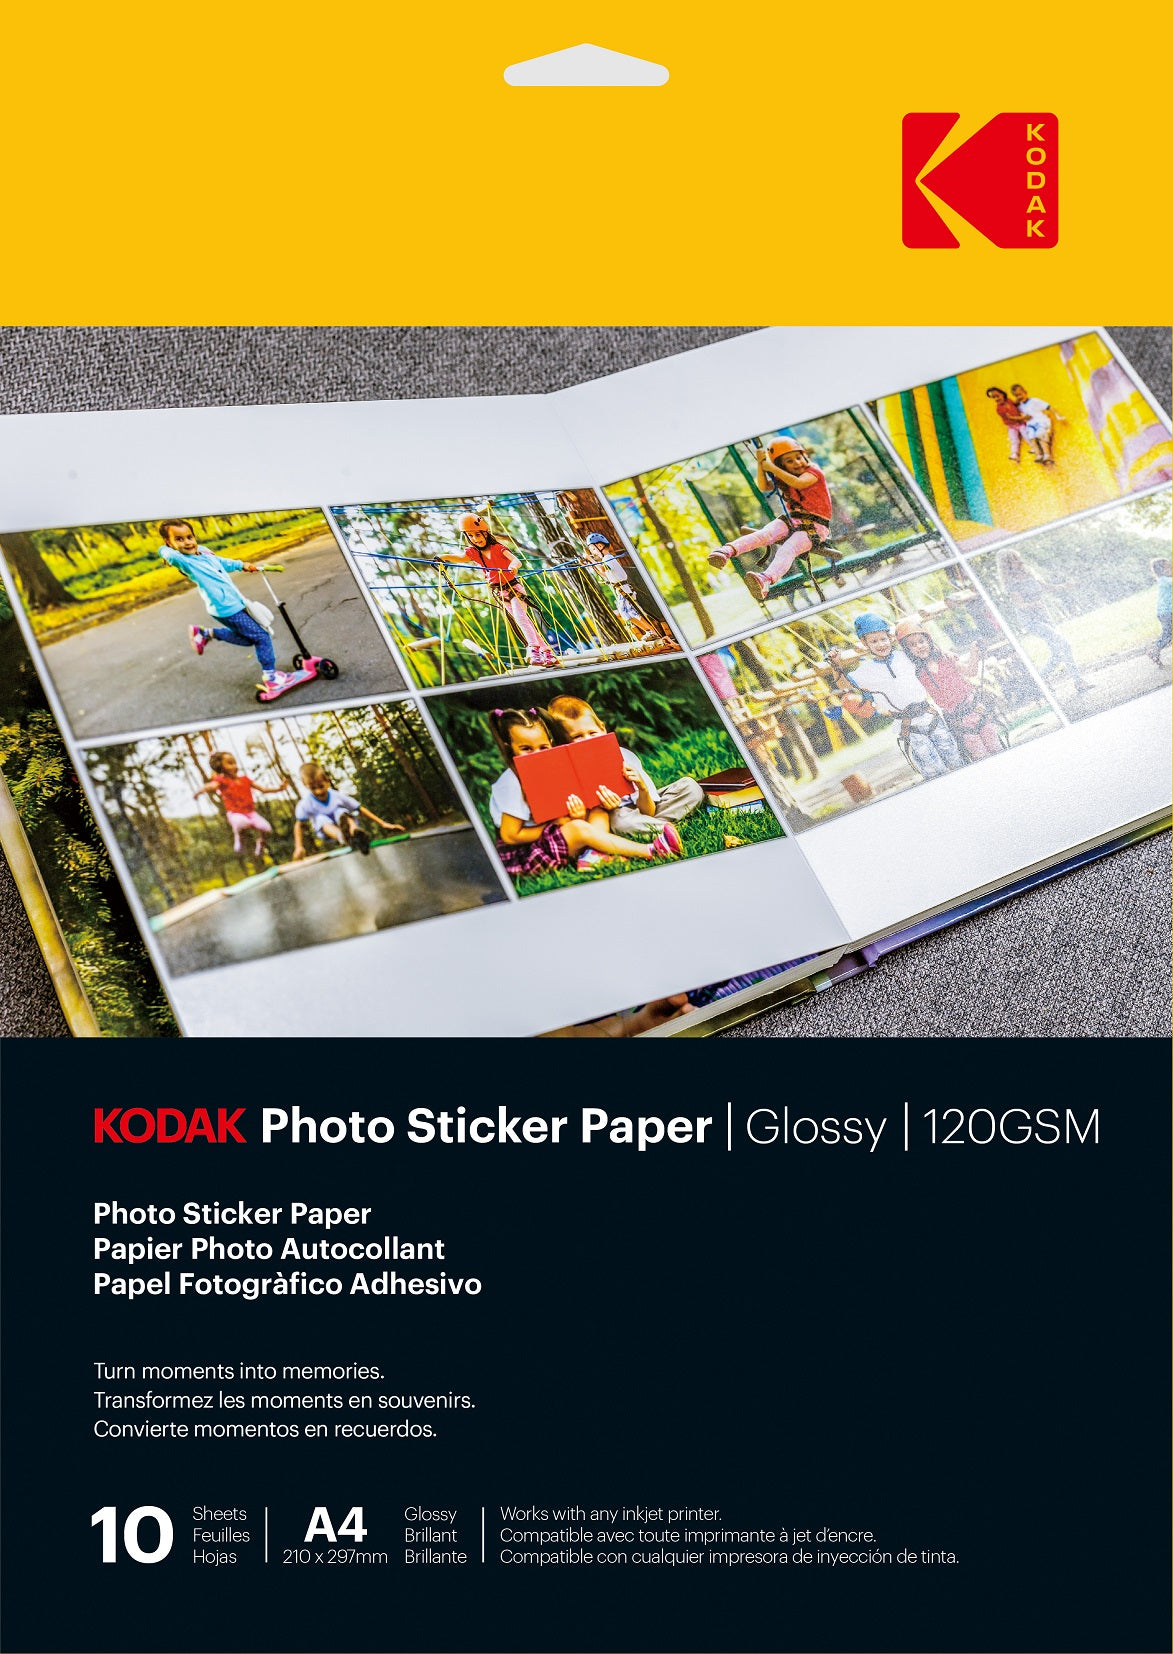 KODAK Photo Sticker Paper Glossy  120 gsm A4 size 10 sheets